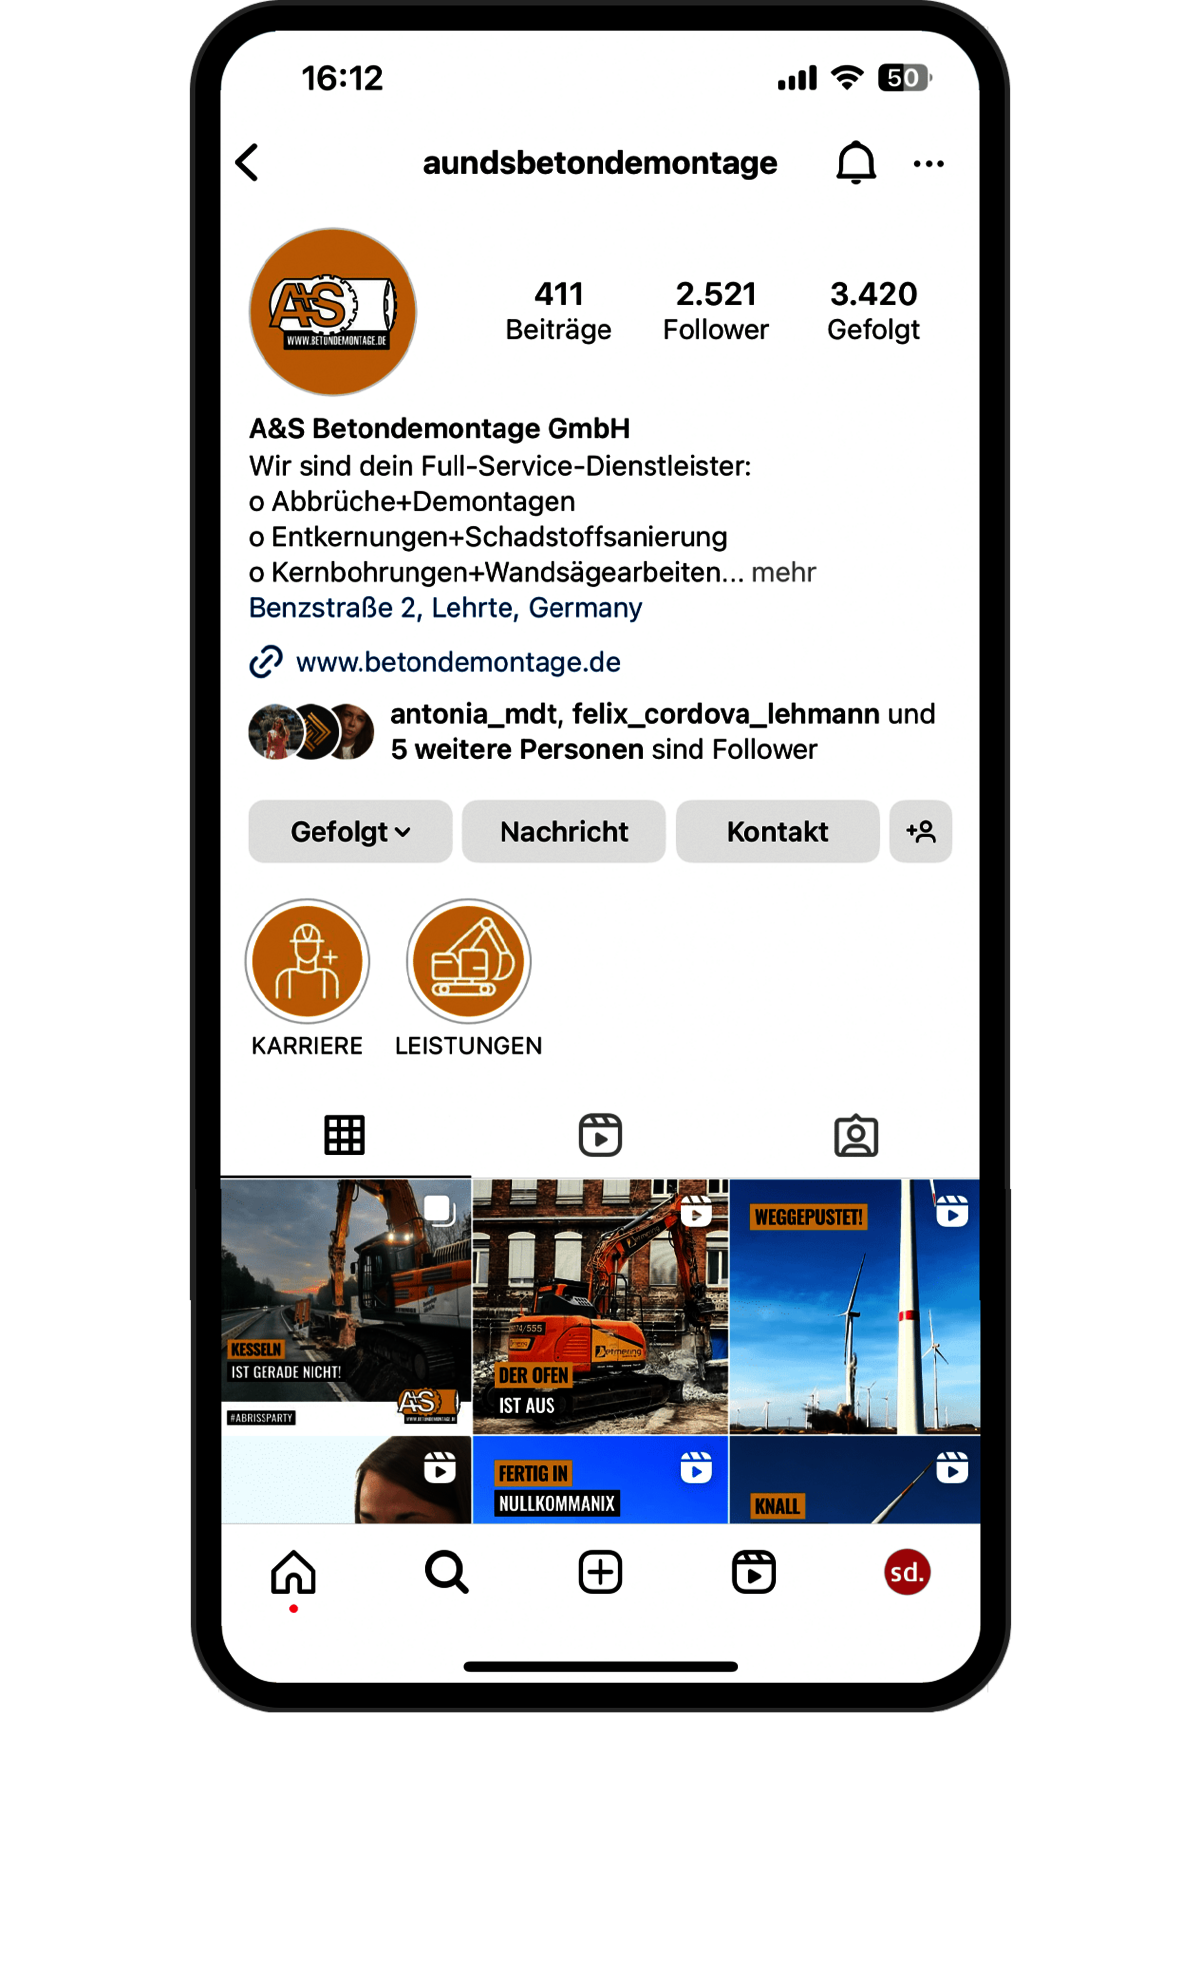 Das Bild zeigt ein Smartphone mit dem Instagram-Kanal der A&S Betondemontage GmbH.